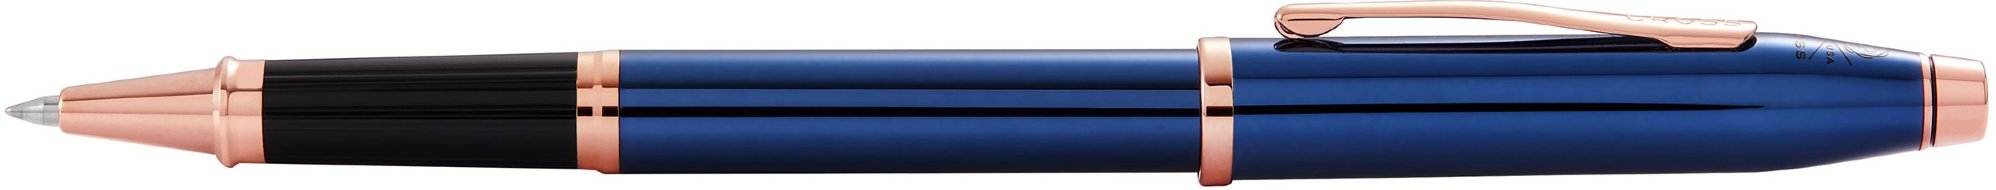 Ручка-роллер Cross Century II AT0085-138